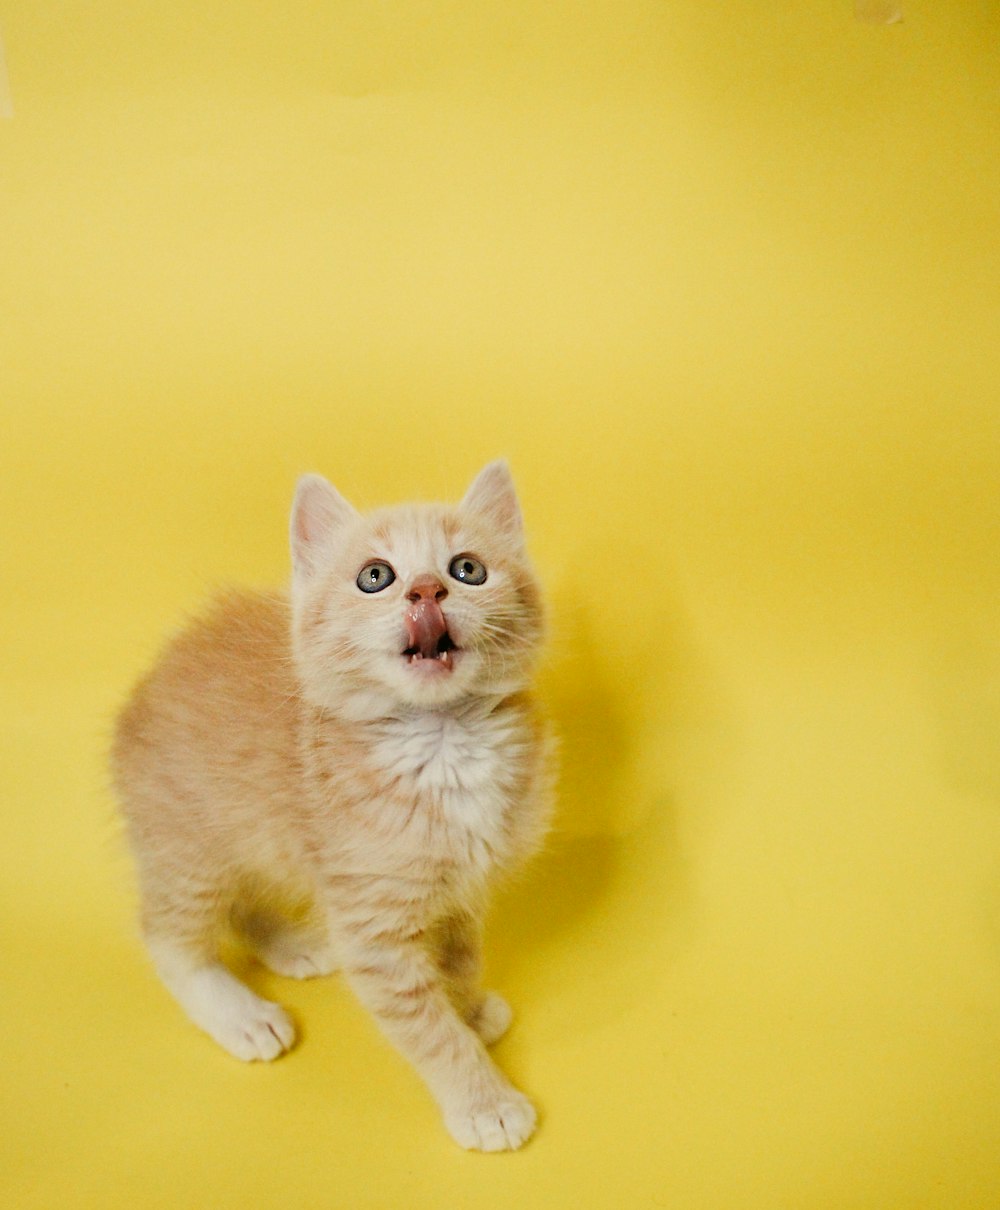 orange tabby kitten on yellow surface